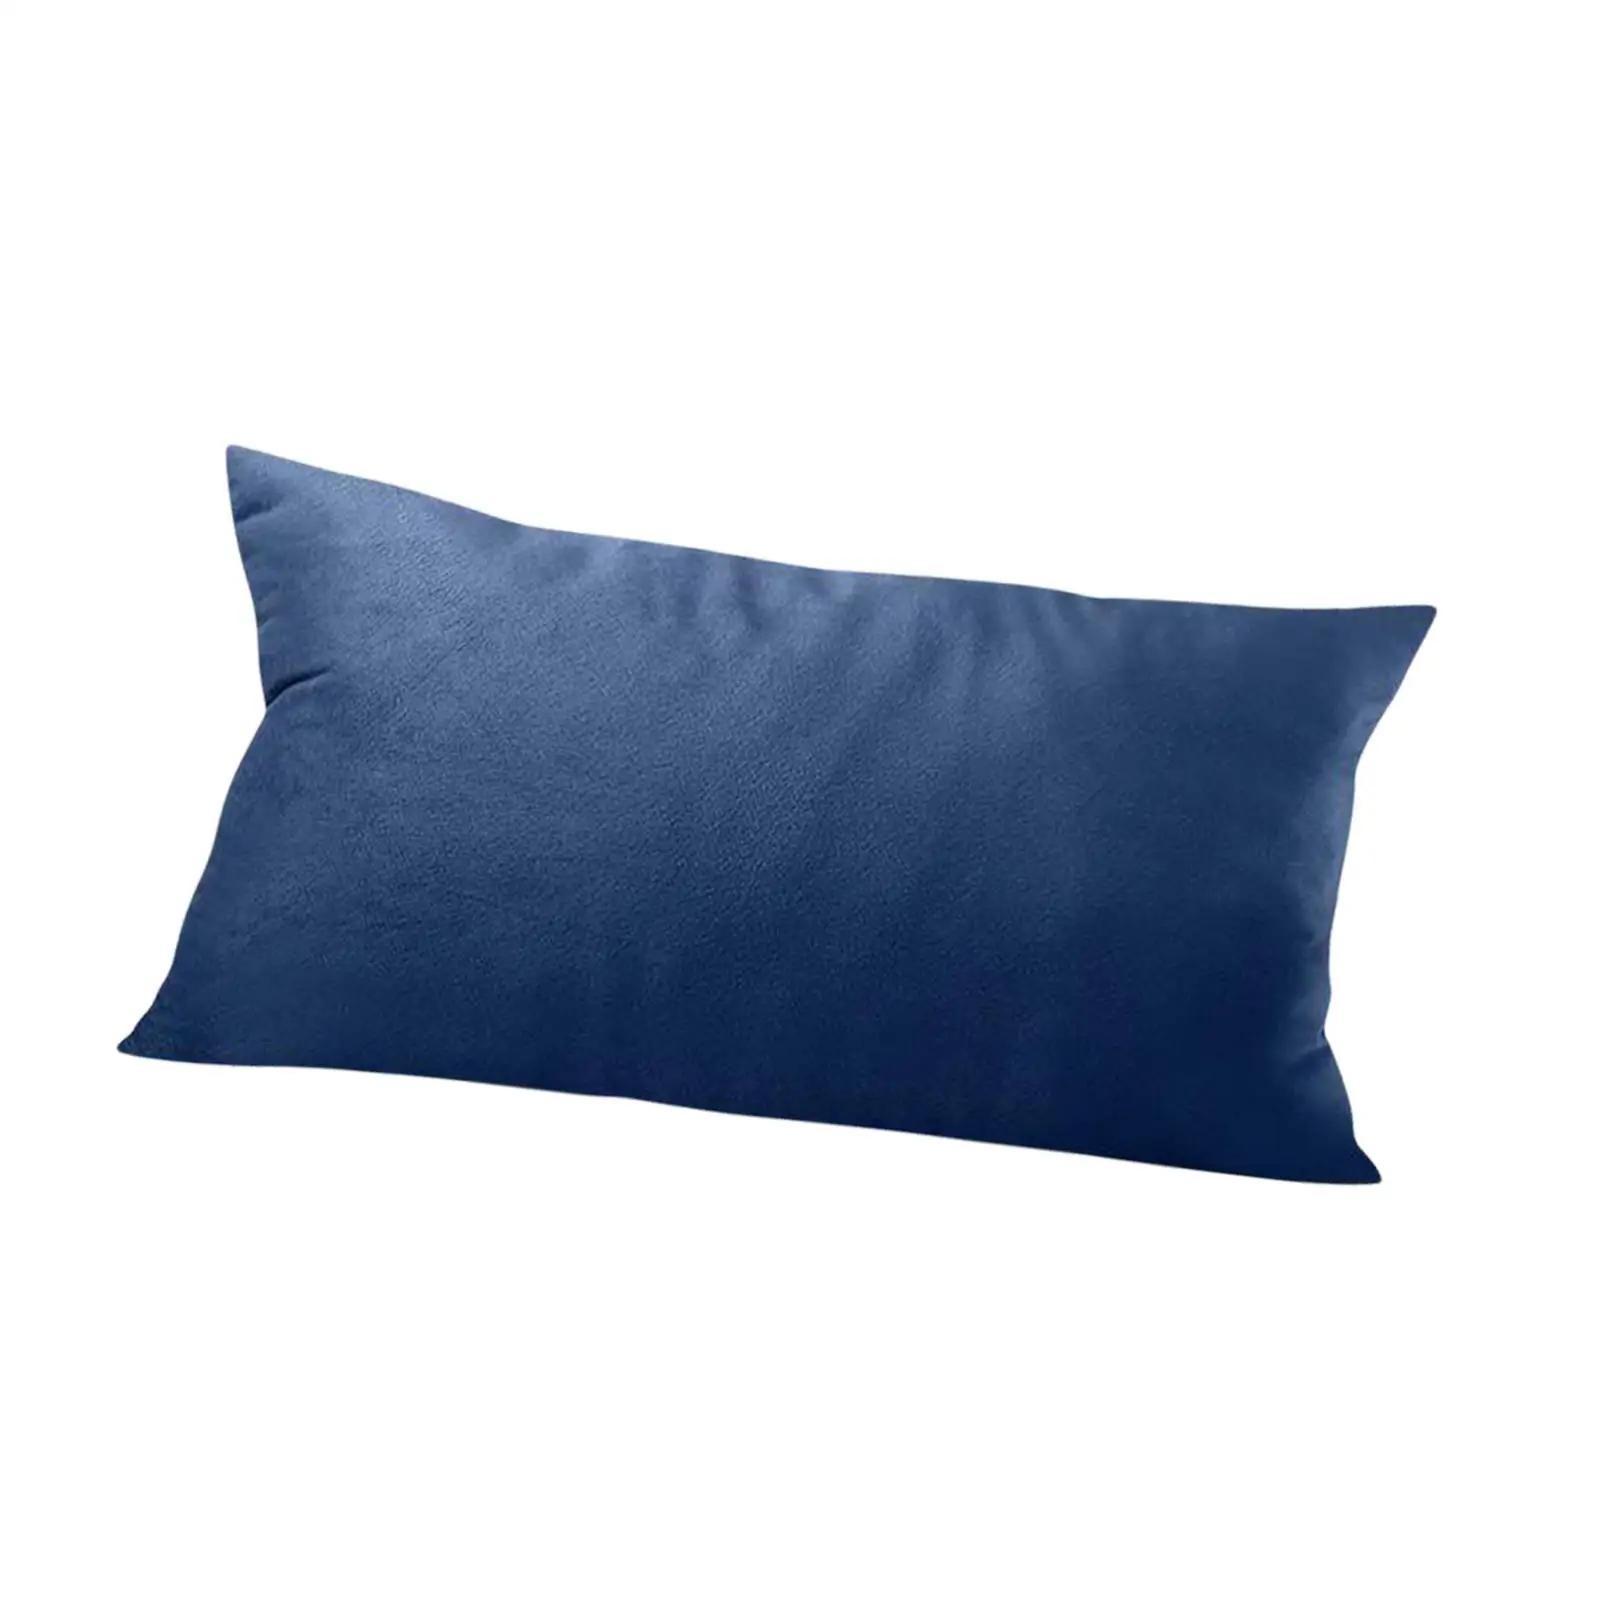 Head Cushion Pillow with pillow Pillow Back Bolster Pillow Lumbar Pillows for Folding Chair Leg Rest and Tension Headrest